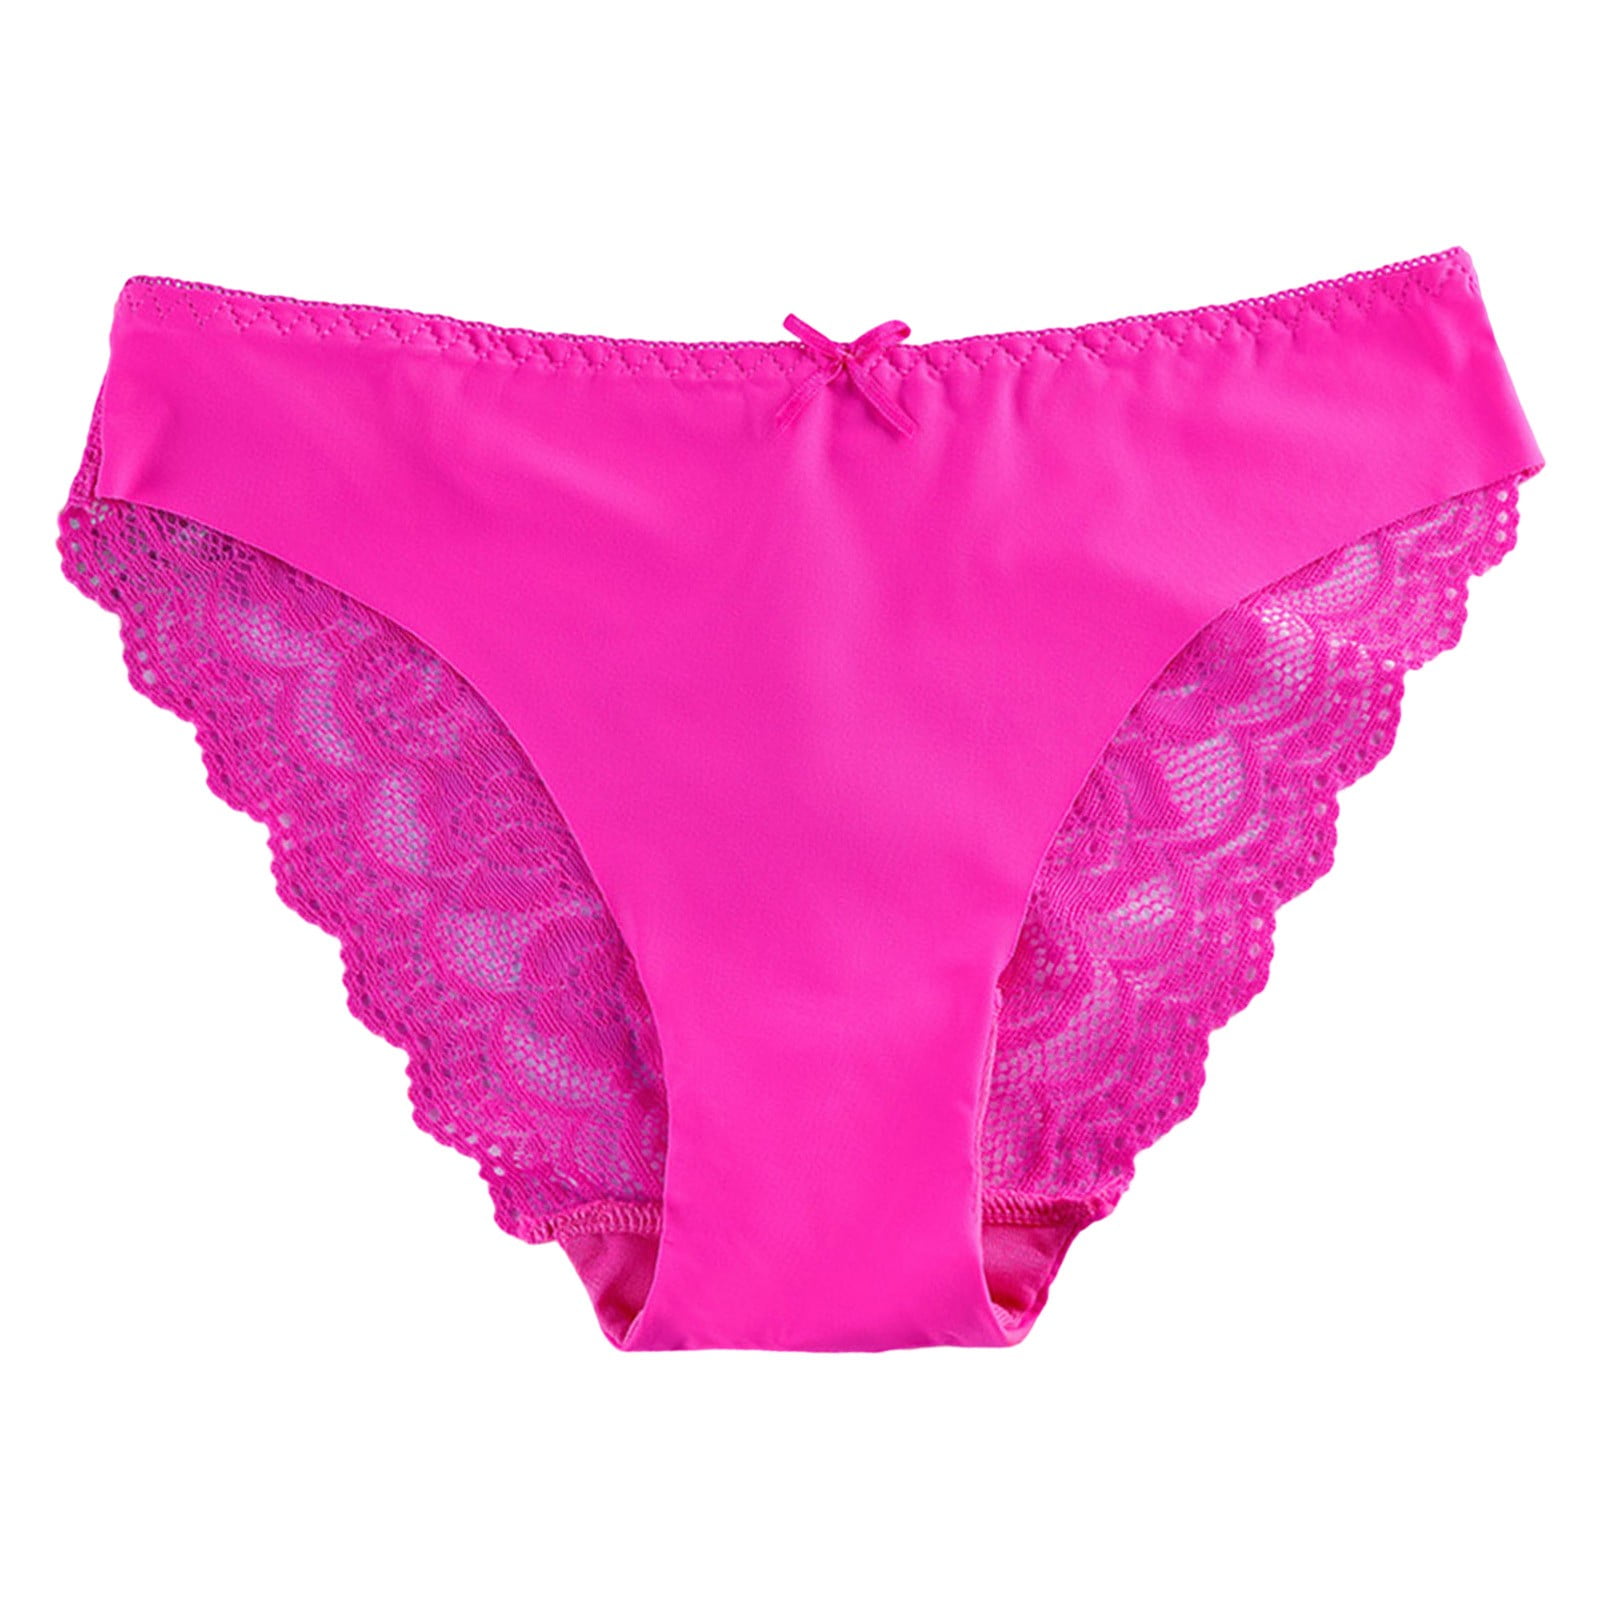 KaLI_store Womens Seamless Underwear Womens UnderwearHigh Waist Underwear  for Women Soft Comfortable Briefs Panty Hot Pink,XL